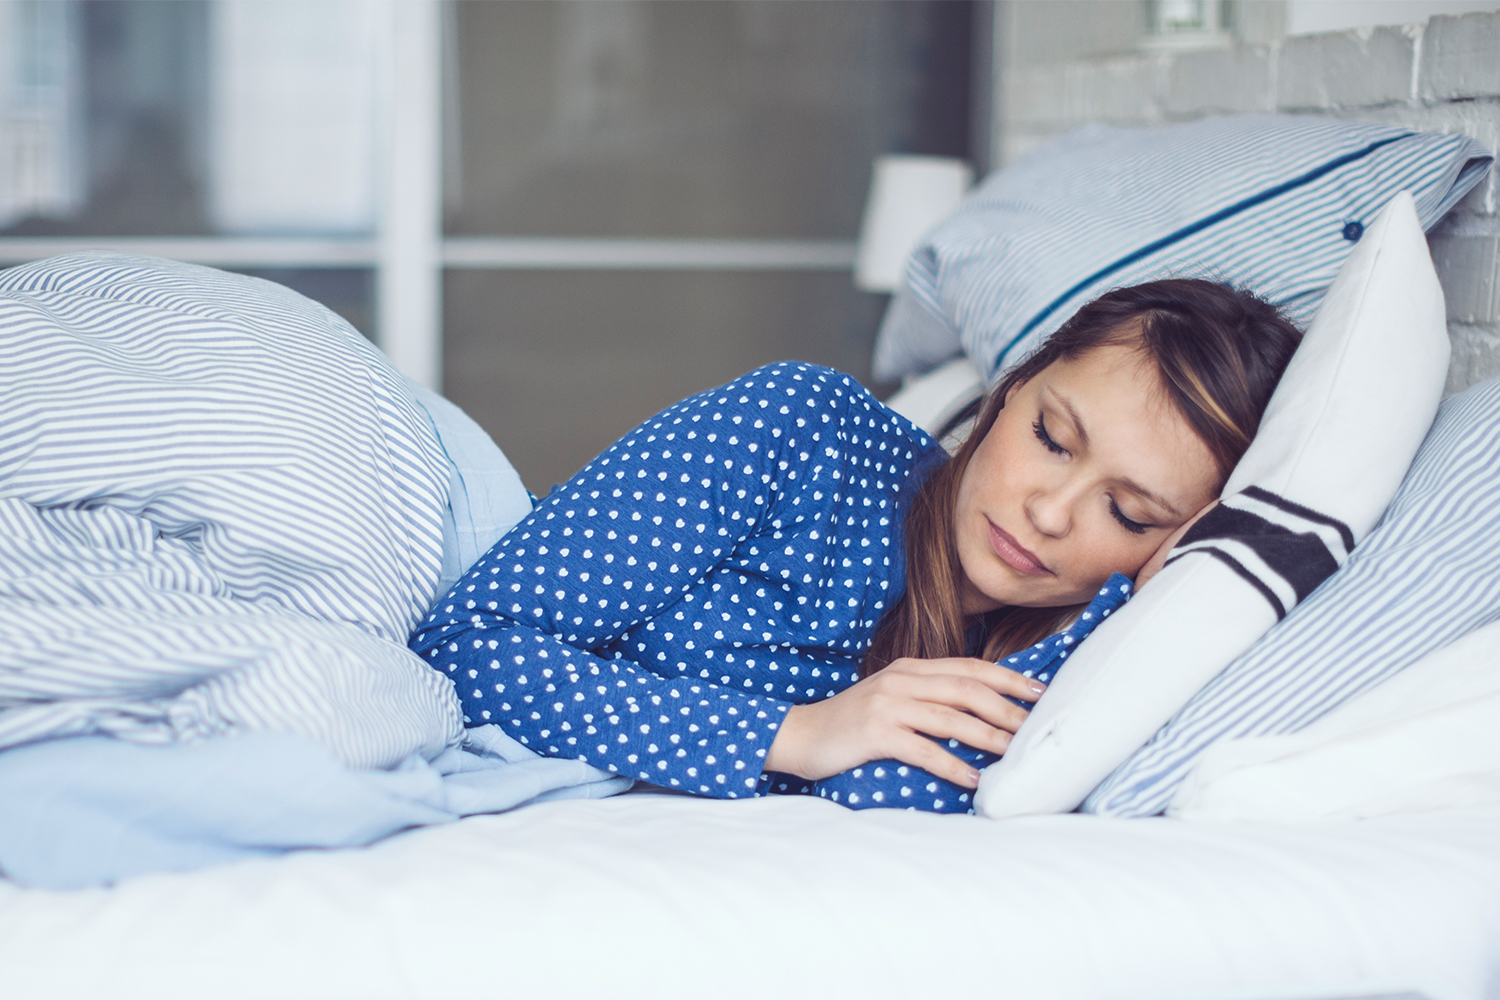 sovappar och insomningsappar som mäter din sömnkvalitet